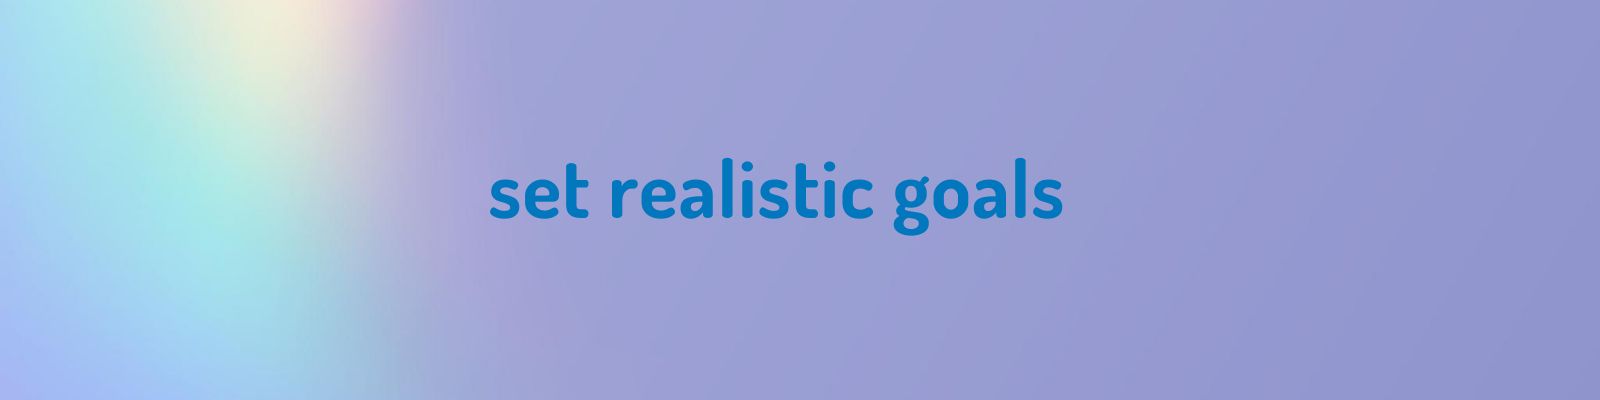 words set realistic goals 